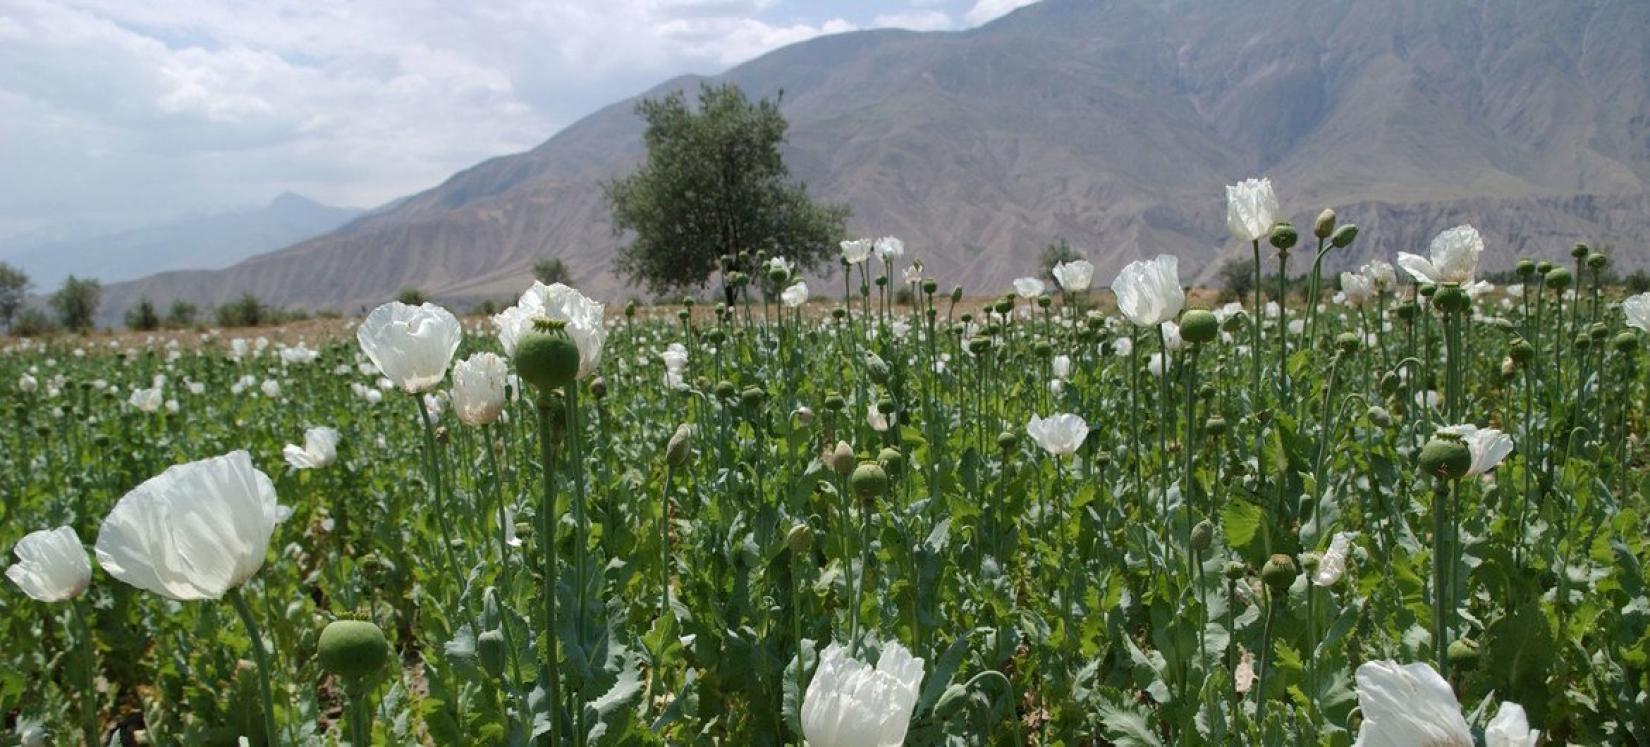 A produção mundial de ópio cresceu 7% entre 2020 e 2021 para 7.930 toneladas - predominantemente devido a um aumento da produção no Afeganistão. Entretanto, no mesmo período, a área mundial de cultivo da papoula caiu 16%,  para 246,8 mil hectares.